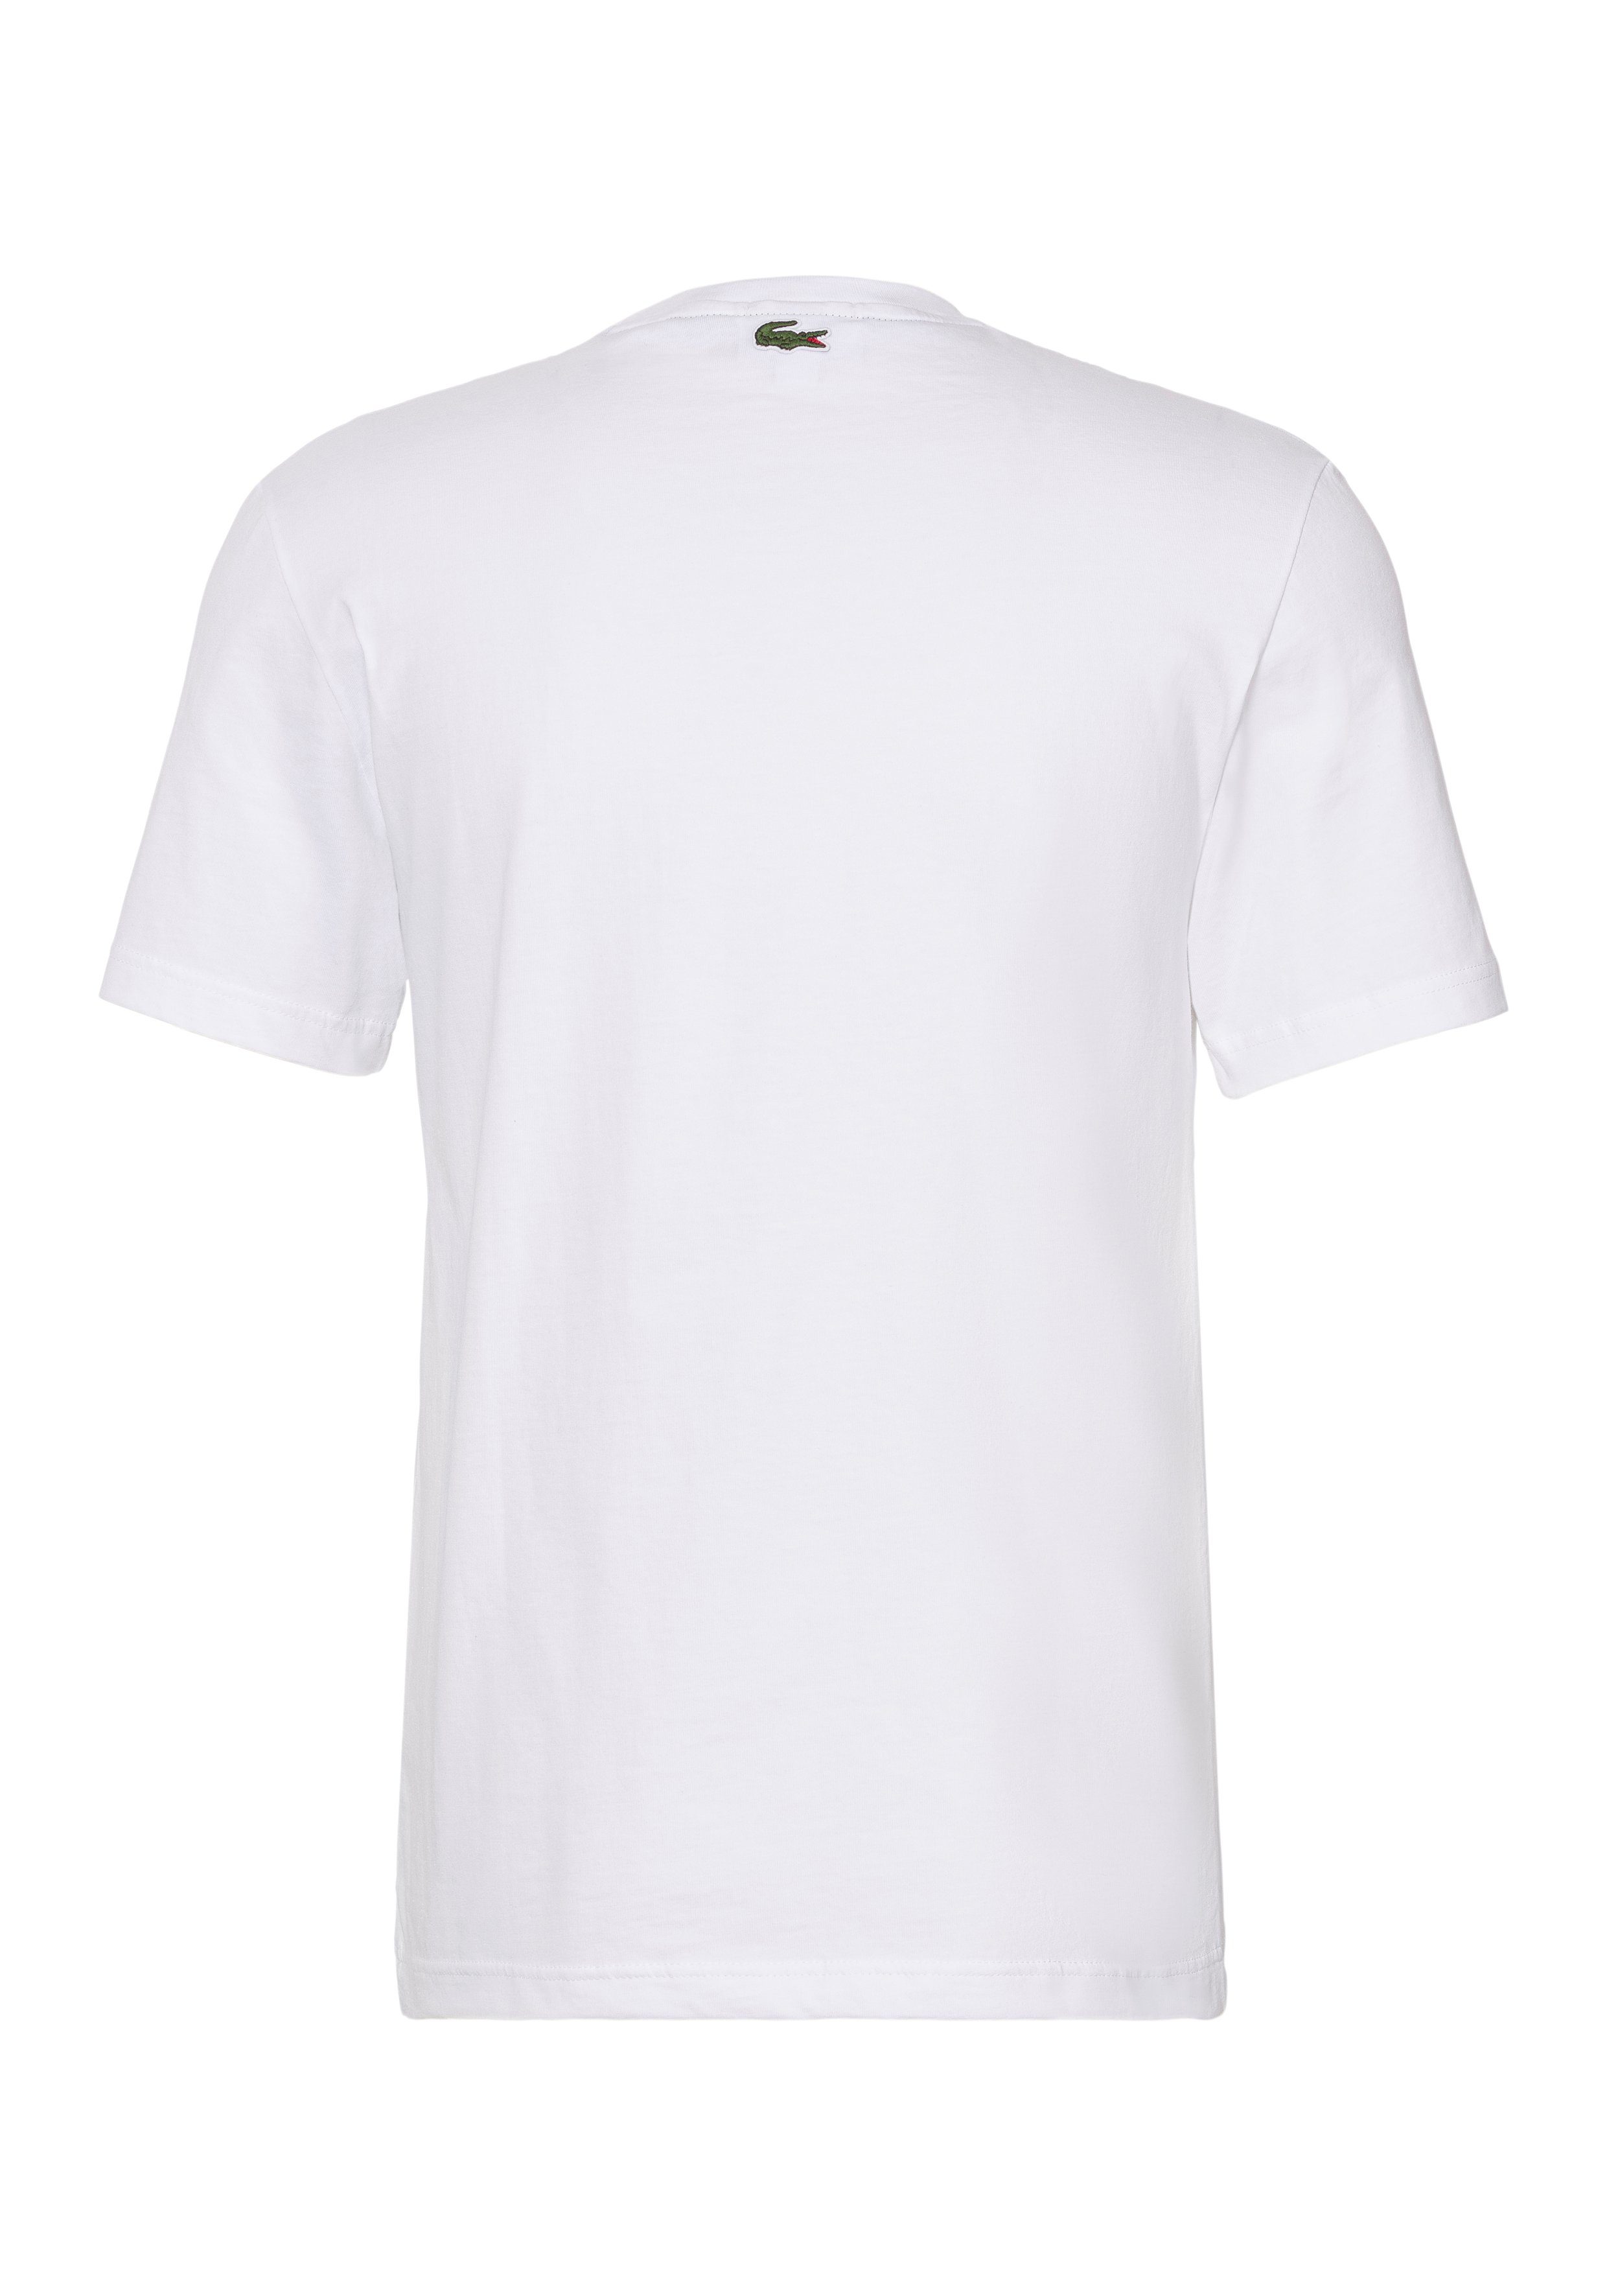 Lacoste Print Lacoste auf WHITE mit T-SHIRT der Brust T-Shirt